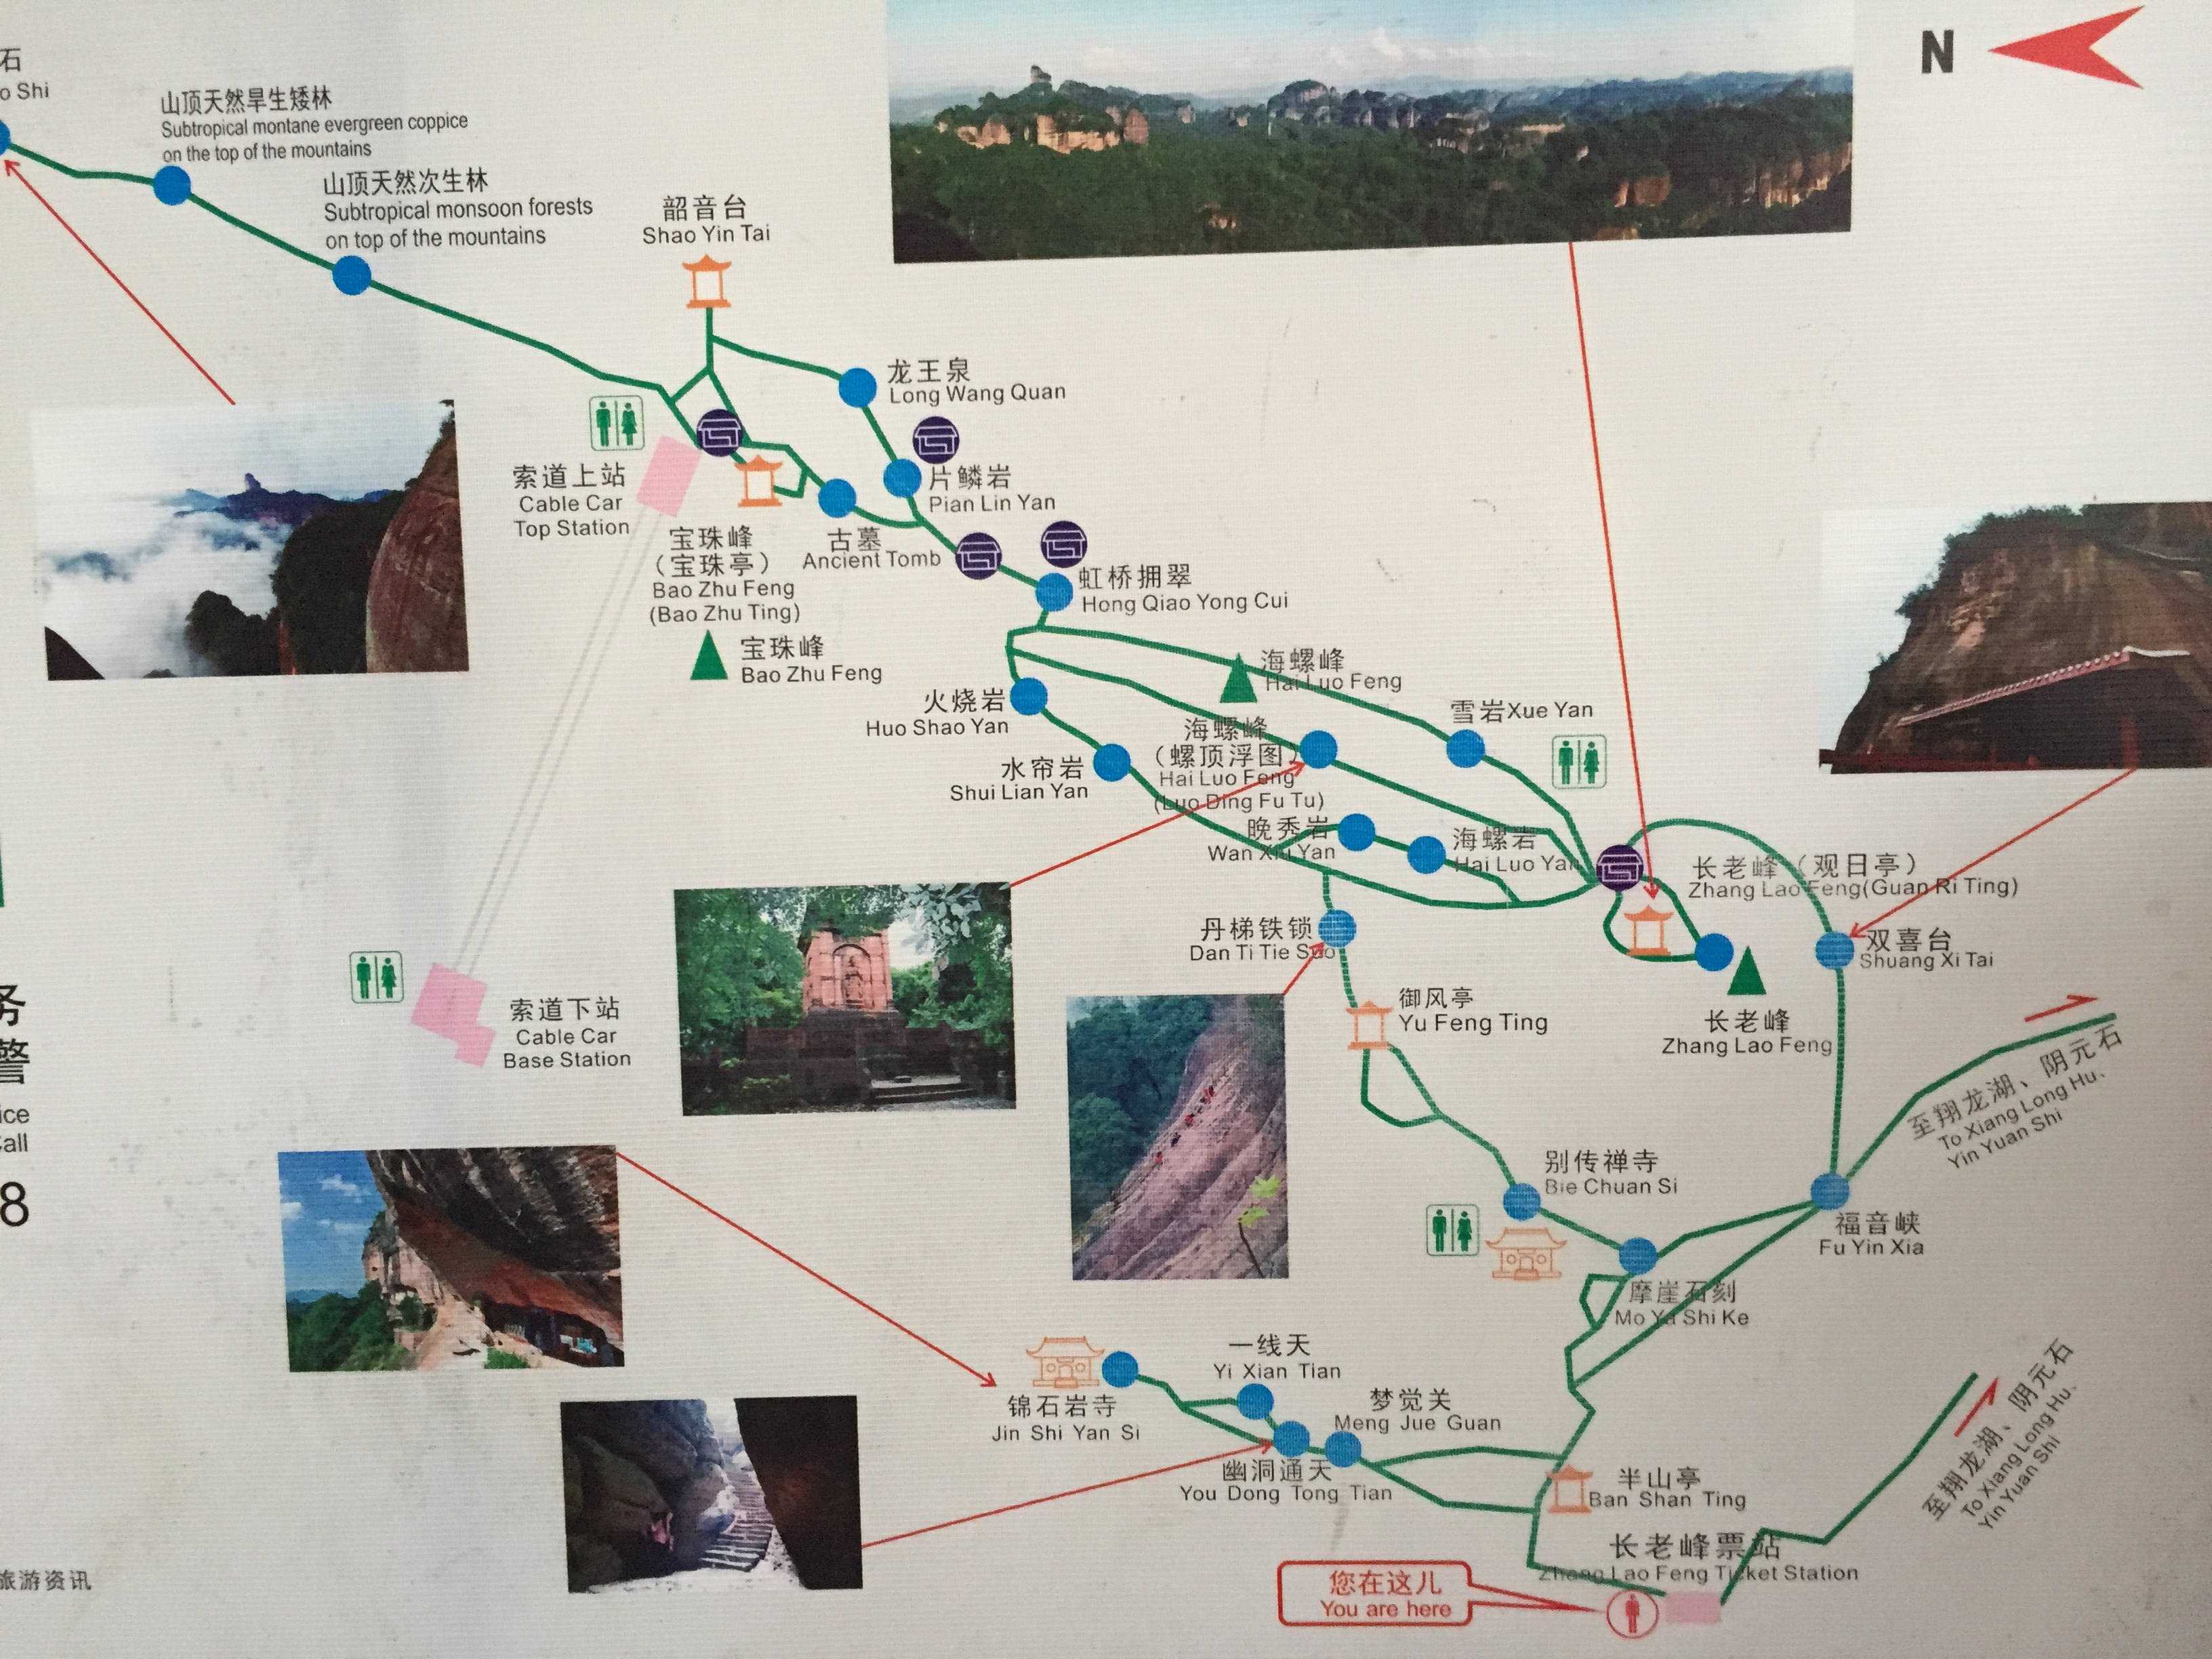 【携程攻略】仁化丹霞山景点,对于广东旅游景点而言,丹霞山非常值得一